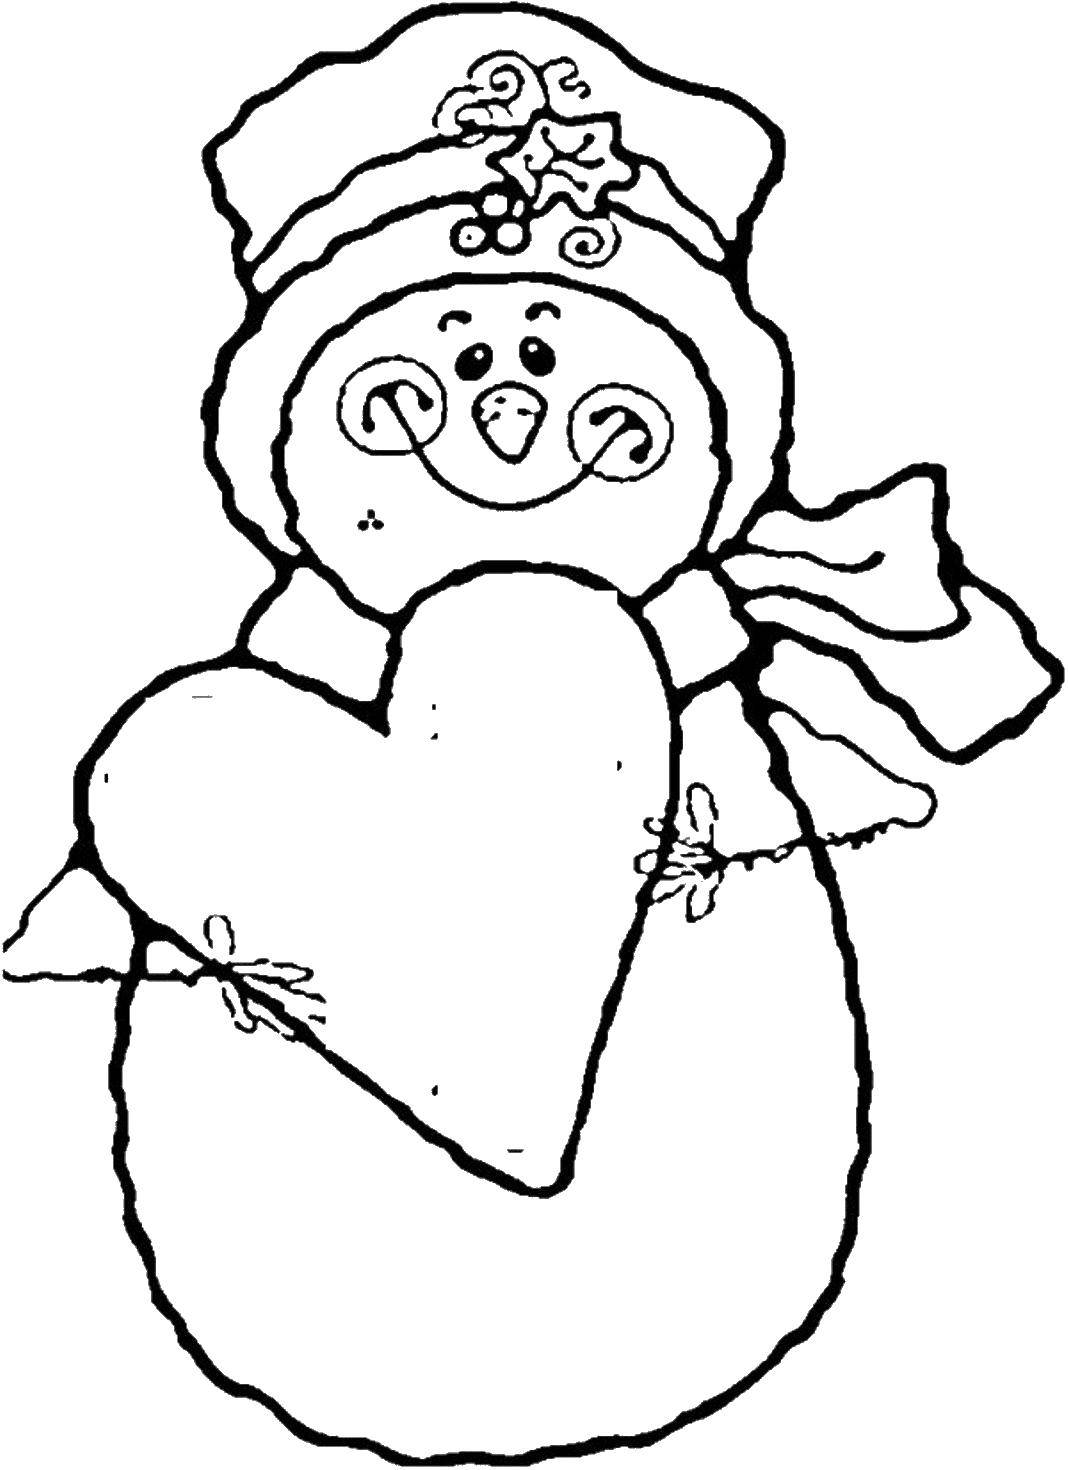 Название: Раскраска Влюбленный снеговик. Категория: Сердечки. Теги: Сердечко, любовь.